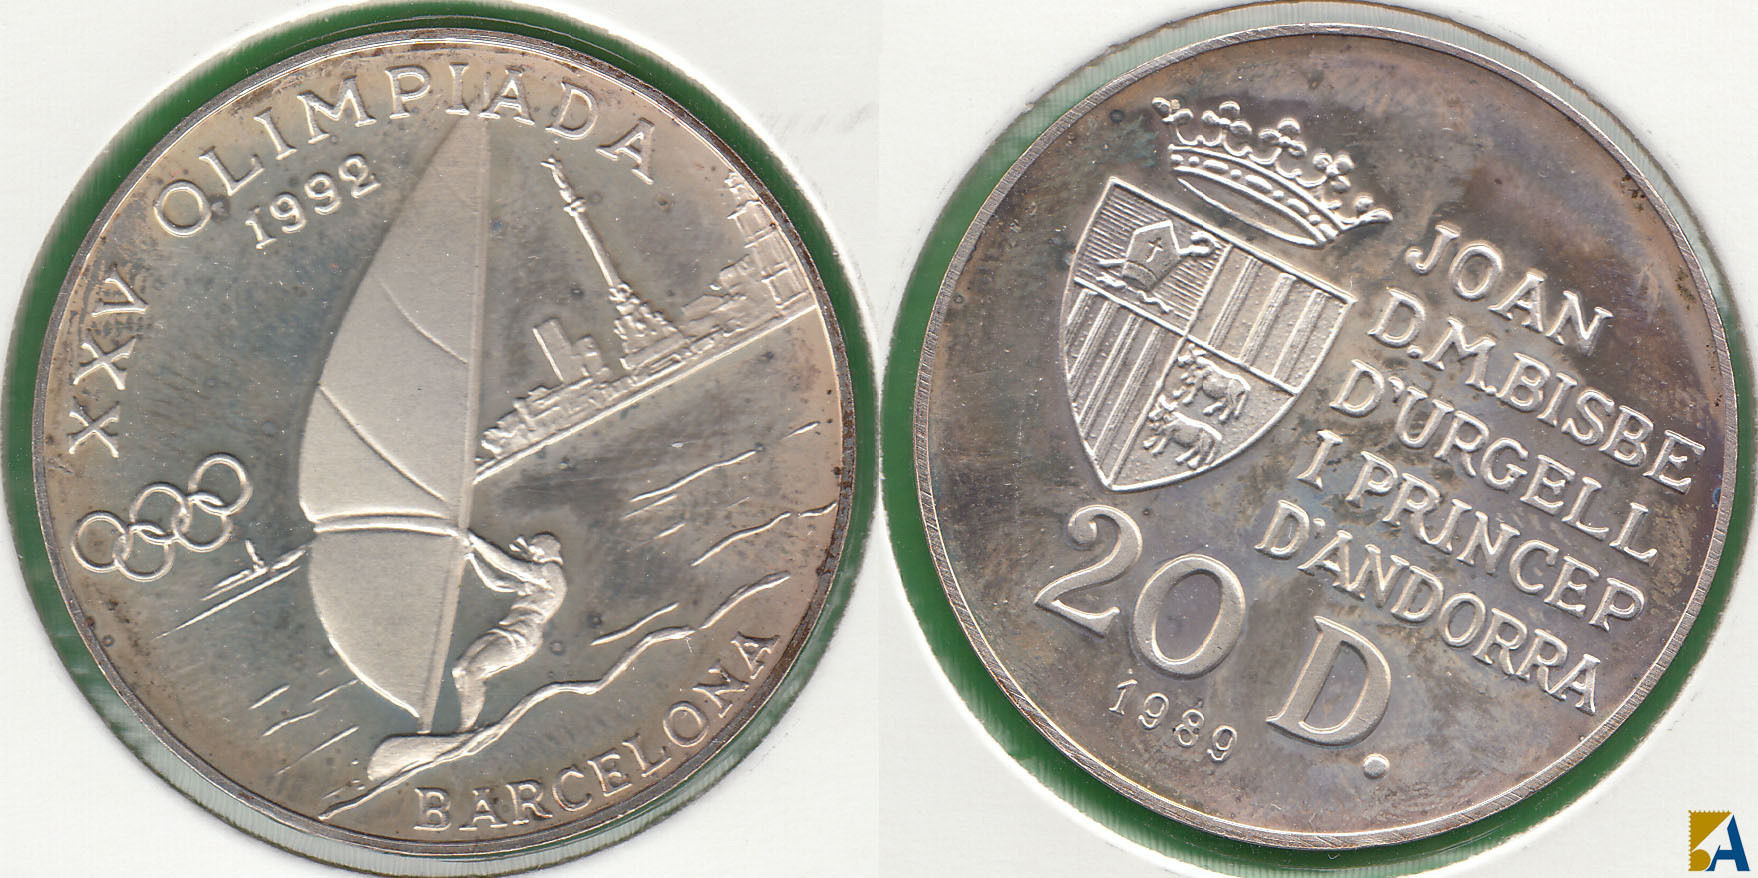 ANDORRA. 20 DINERS DE 1989. PLATA 0.925.